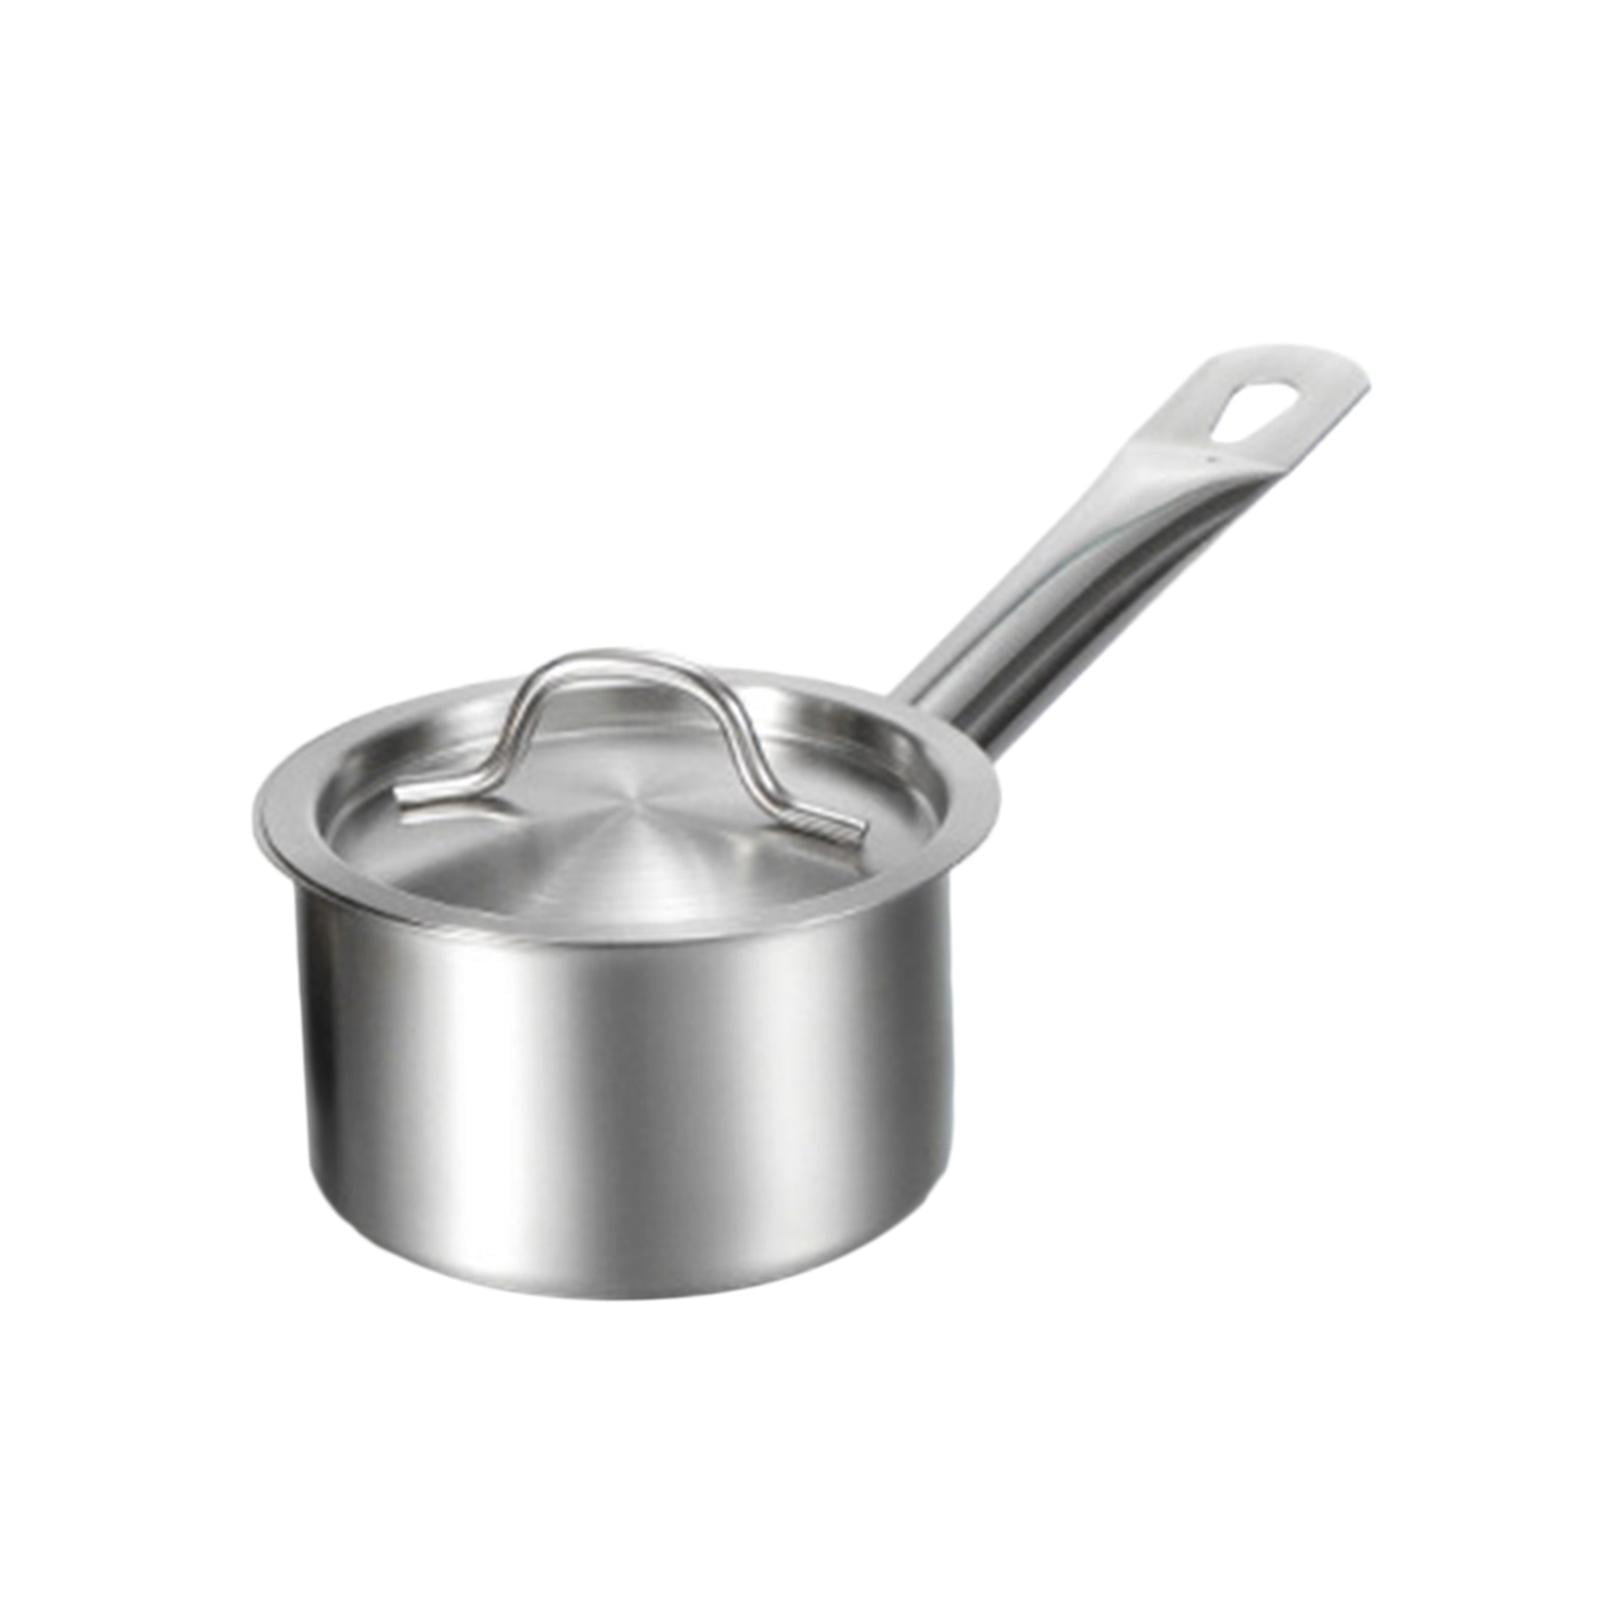 STEPHY Aluminium Sauce Pan, Milk Pan/Tea Pan 2 Liter With